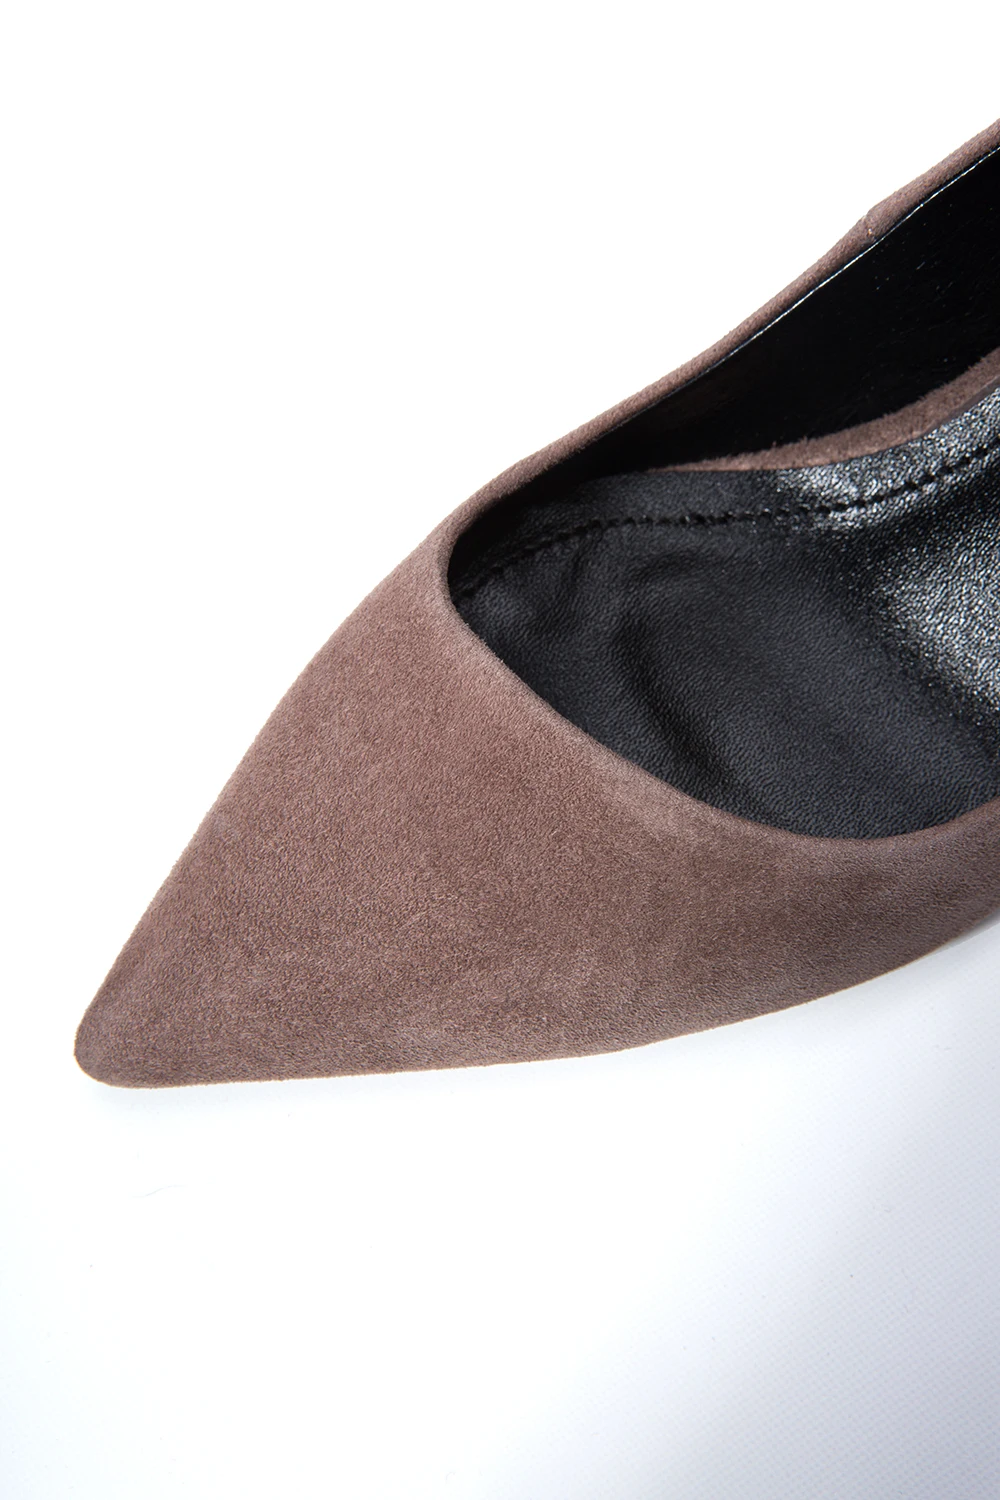 Arden Furtado/ г. Модные весенние офисные женские туфли-лодочки на среднем каблуке красного, серого и телесного цвета розовые модельные туфли женские туфли на высоком каблуке-шпильке, Размеры 33, 40, Новинка